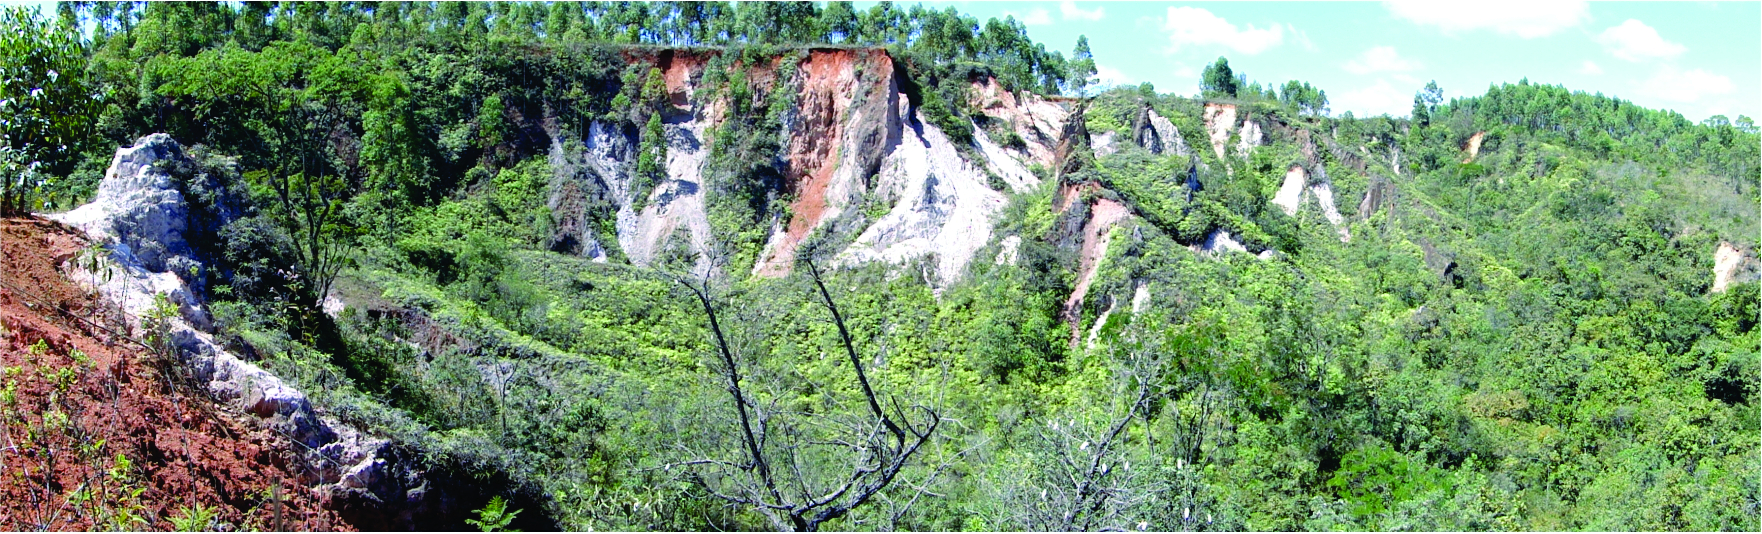 Mineração, degradação ambiental e arqueologia: Minas Gerais